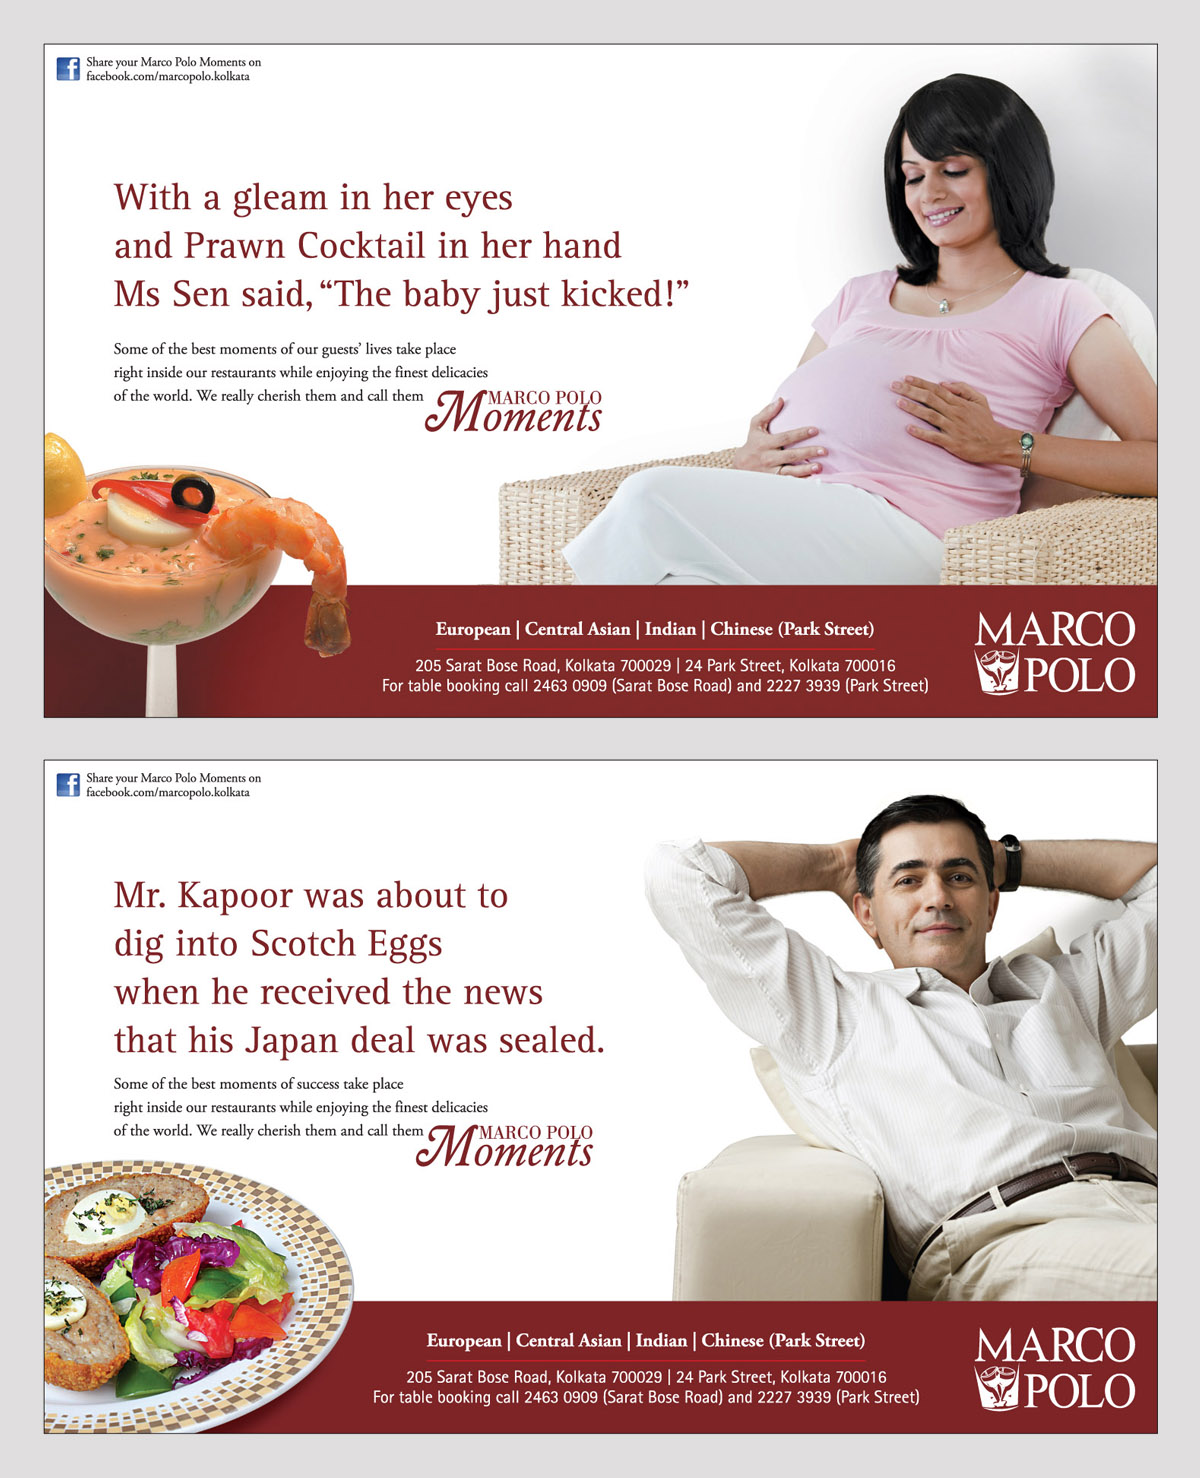 Marco Polo Moments Press Campaign